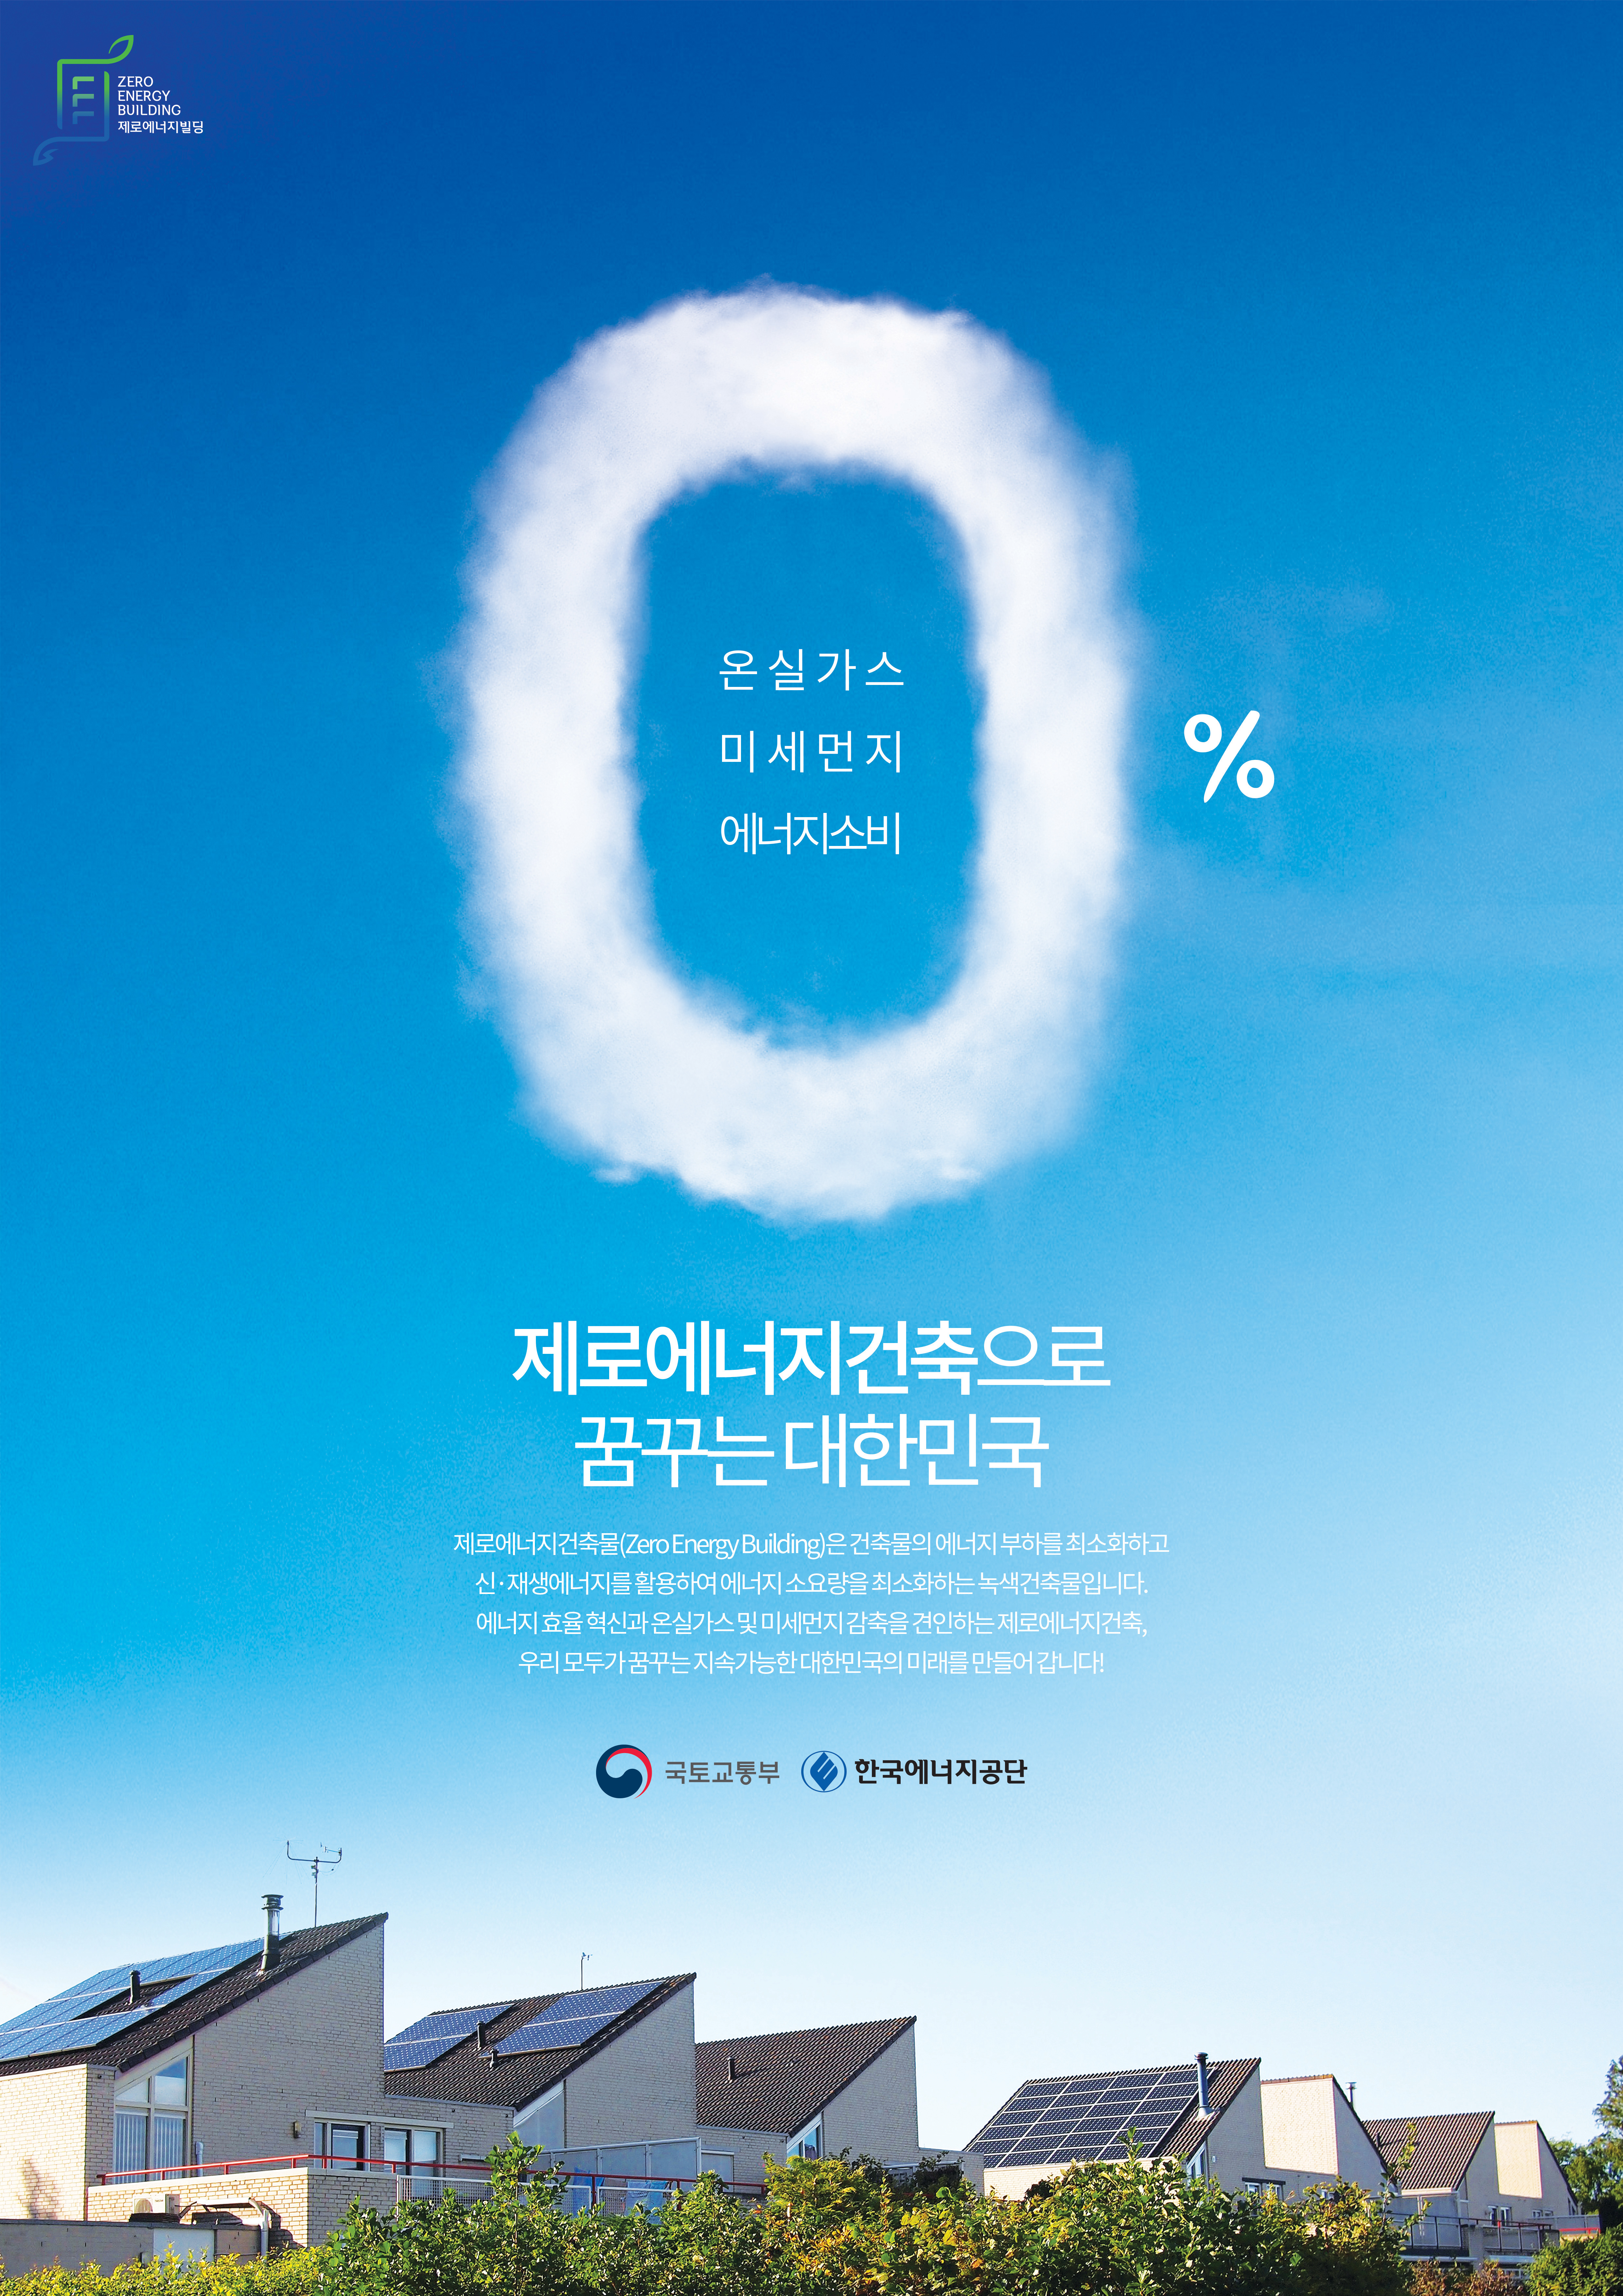 2020 제로에너지건축 홍보 콘텐츠 공모전 최우수상(광고디자인) - 제로에너지건축으로 꿈꾸는 대한민국